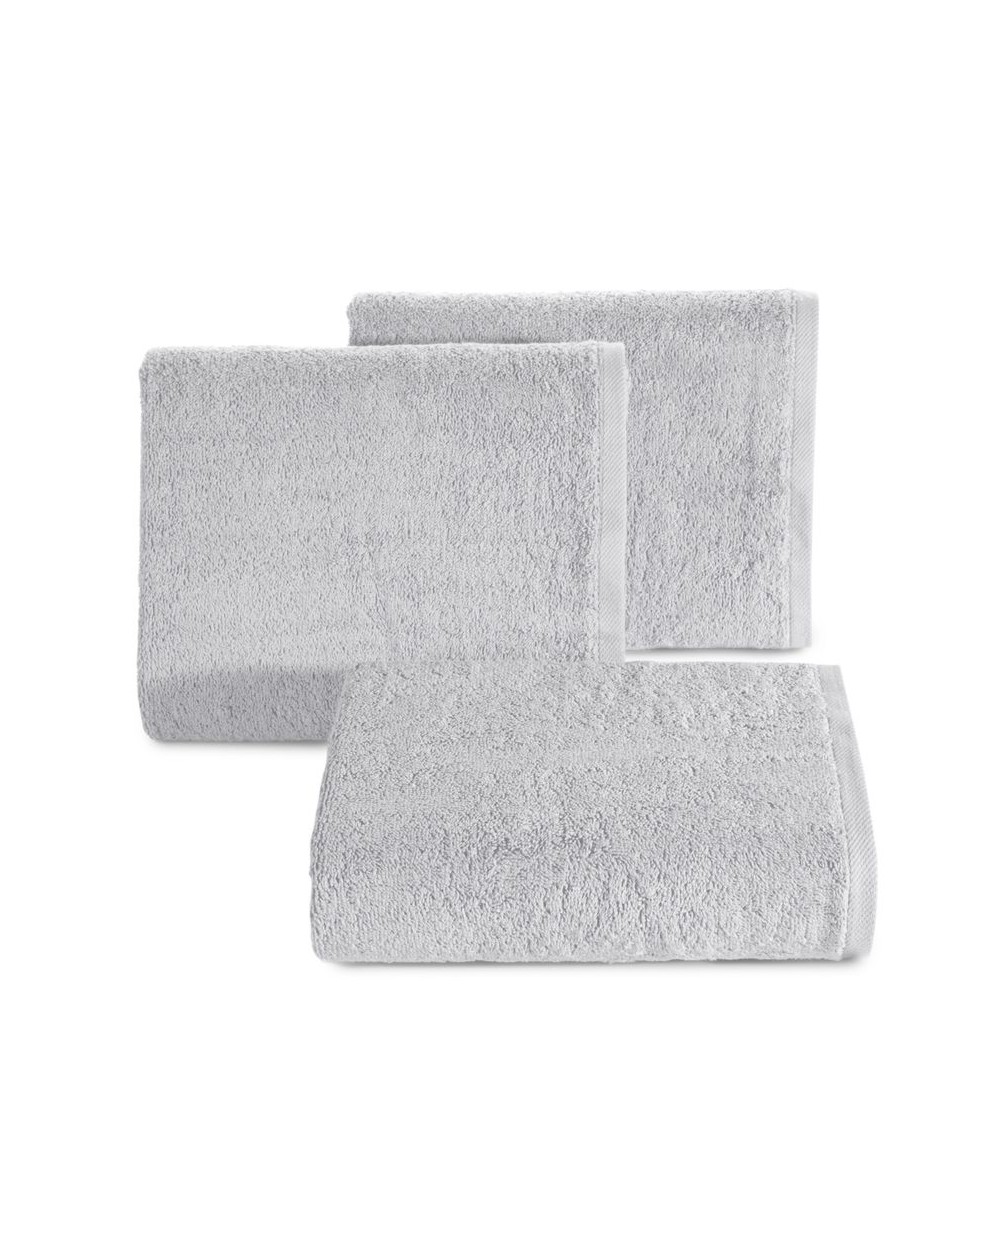 Ręcznik bawełna 70x140 Gładki 2 srebrny